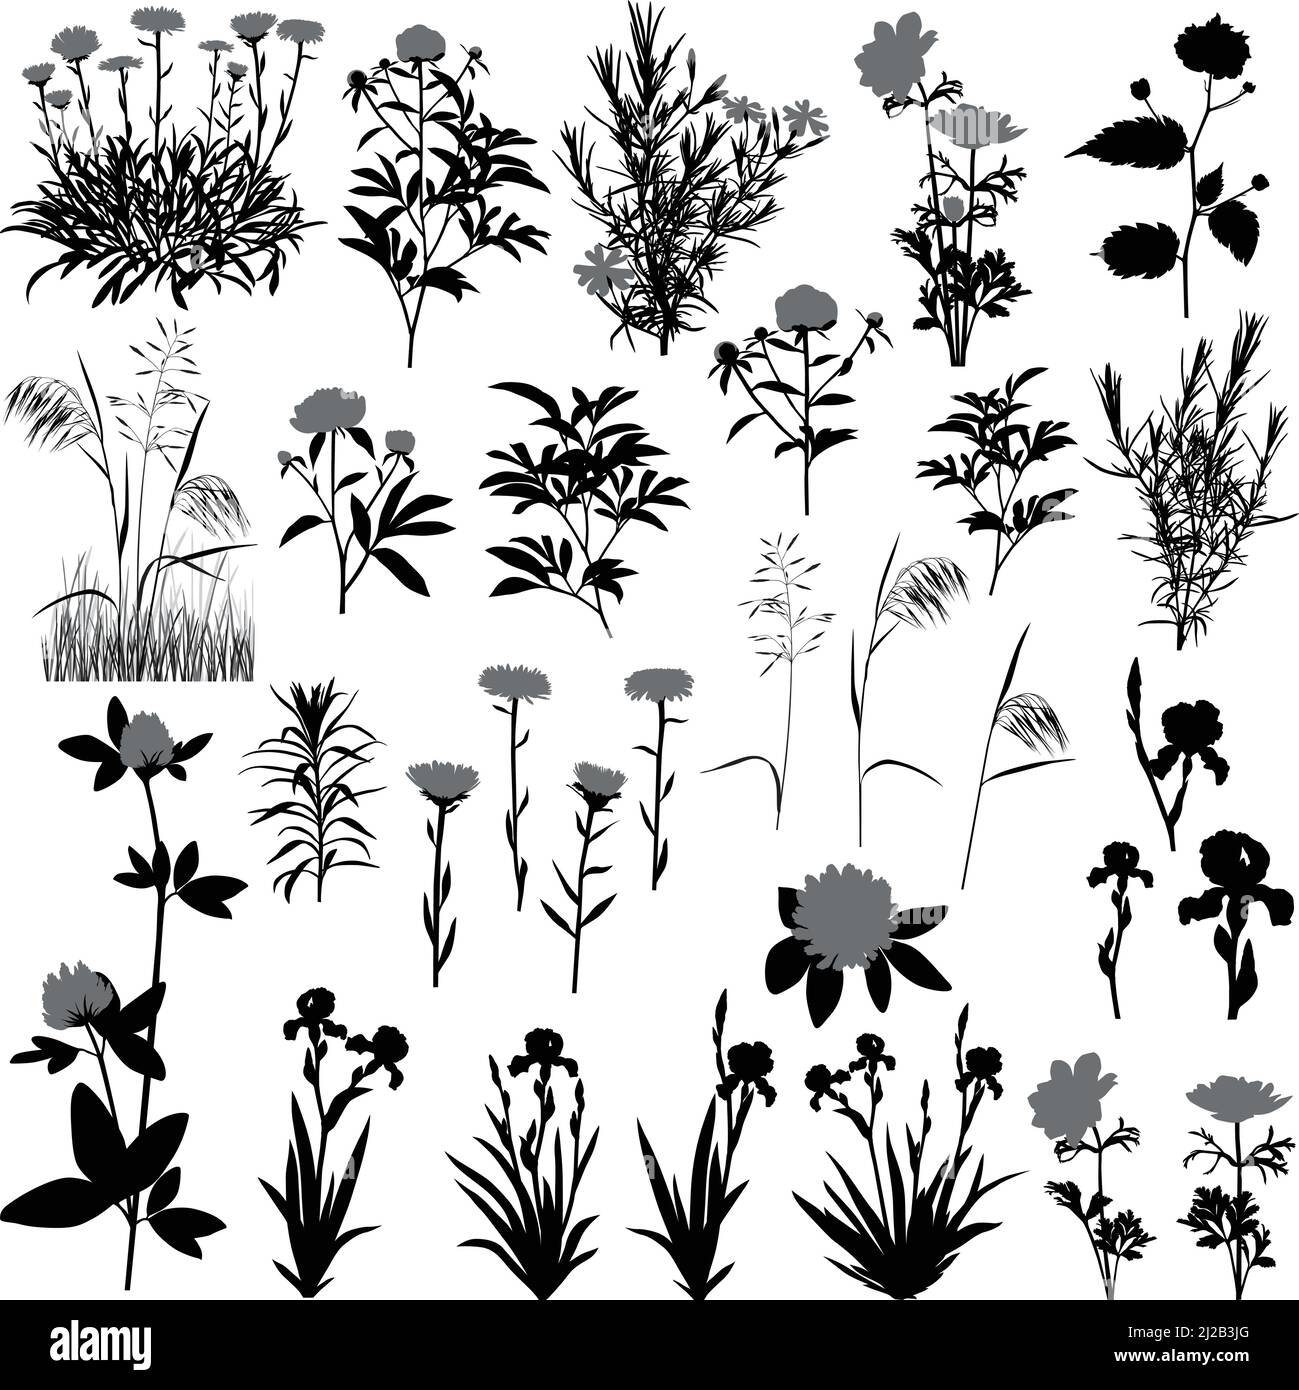 Silhouetten von Blumen und Pflanzen: Anemone, Aster, Kleeblatt, Iris, kerria, Pfingstrose, Phlox und Wiesenpflanzen Stock Vektor